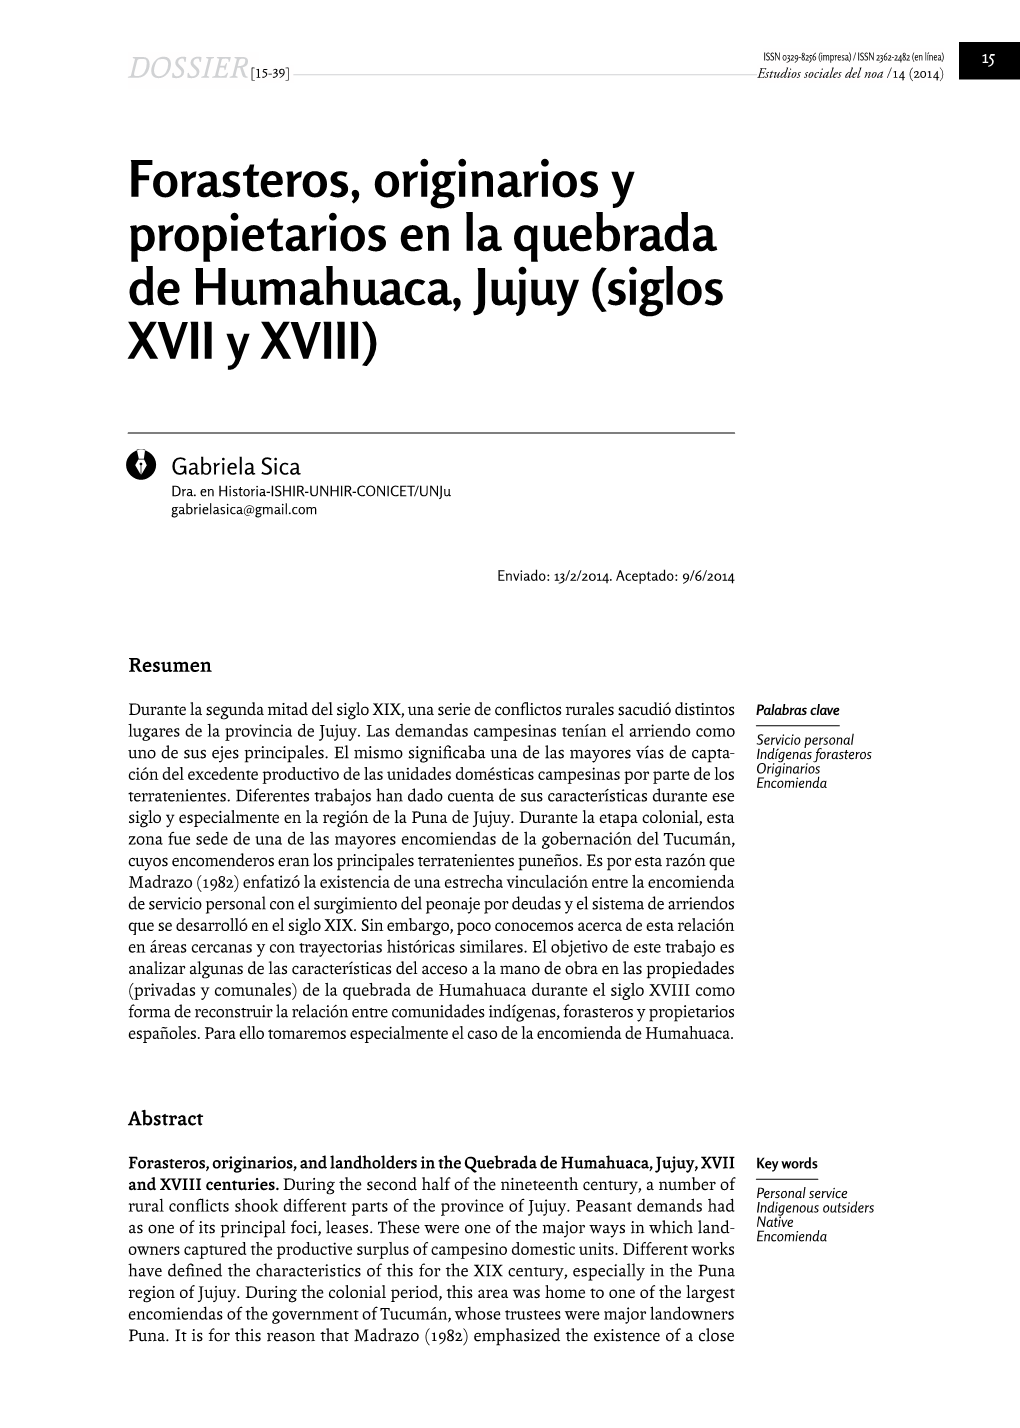 Forasteros, Originarios Y Propietarios En La Quebrada De Humahuaca, Jujuy (Siglos XVII Y XVIII)